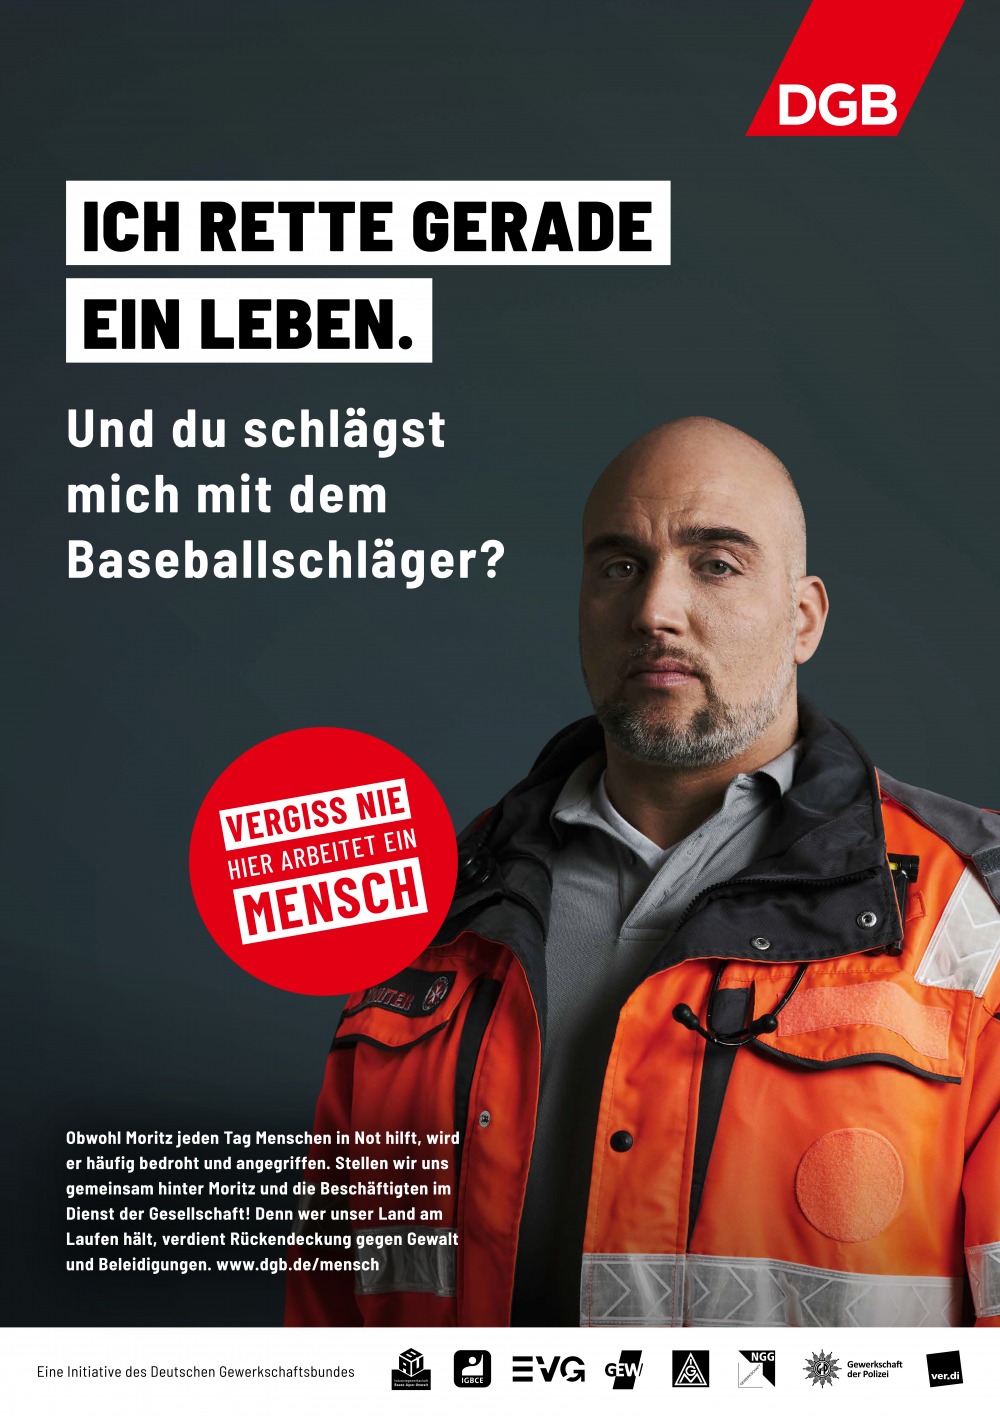 NEW CAMPAIGN DGB Bundesvorstand   Deutscher Gewerkschaftsbund Kampagne  VERGISS NIE HIER ARBEITET  EIN MENSCH (6 images)